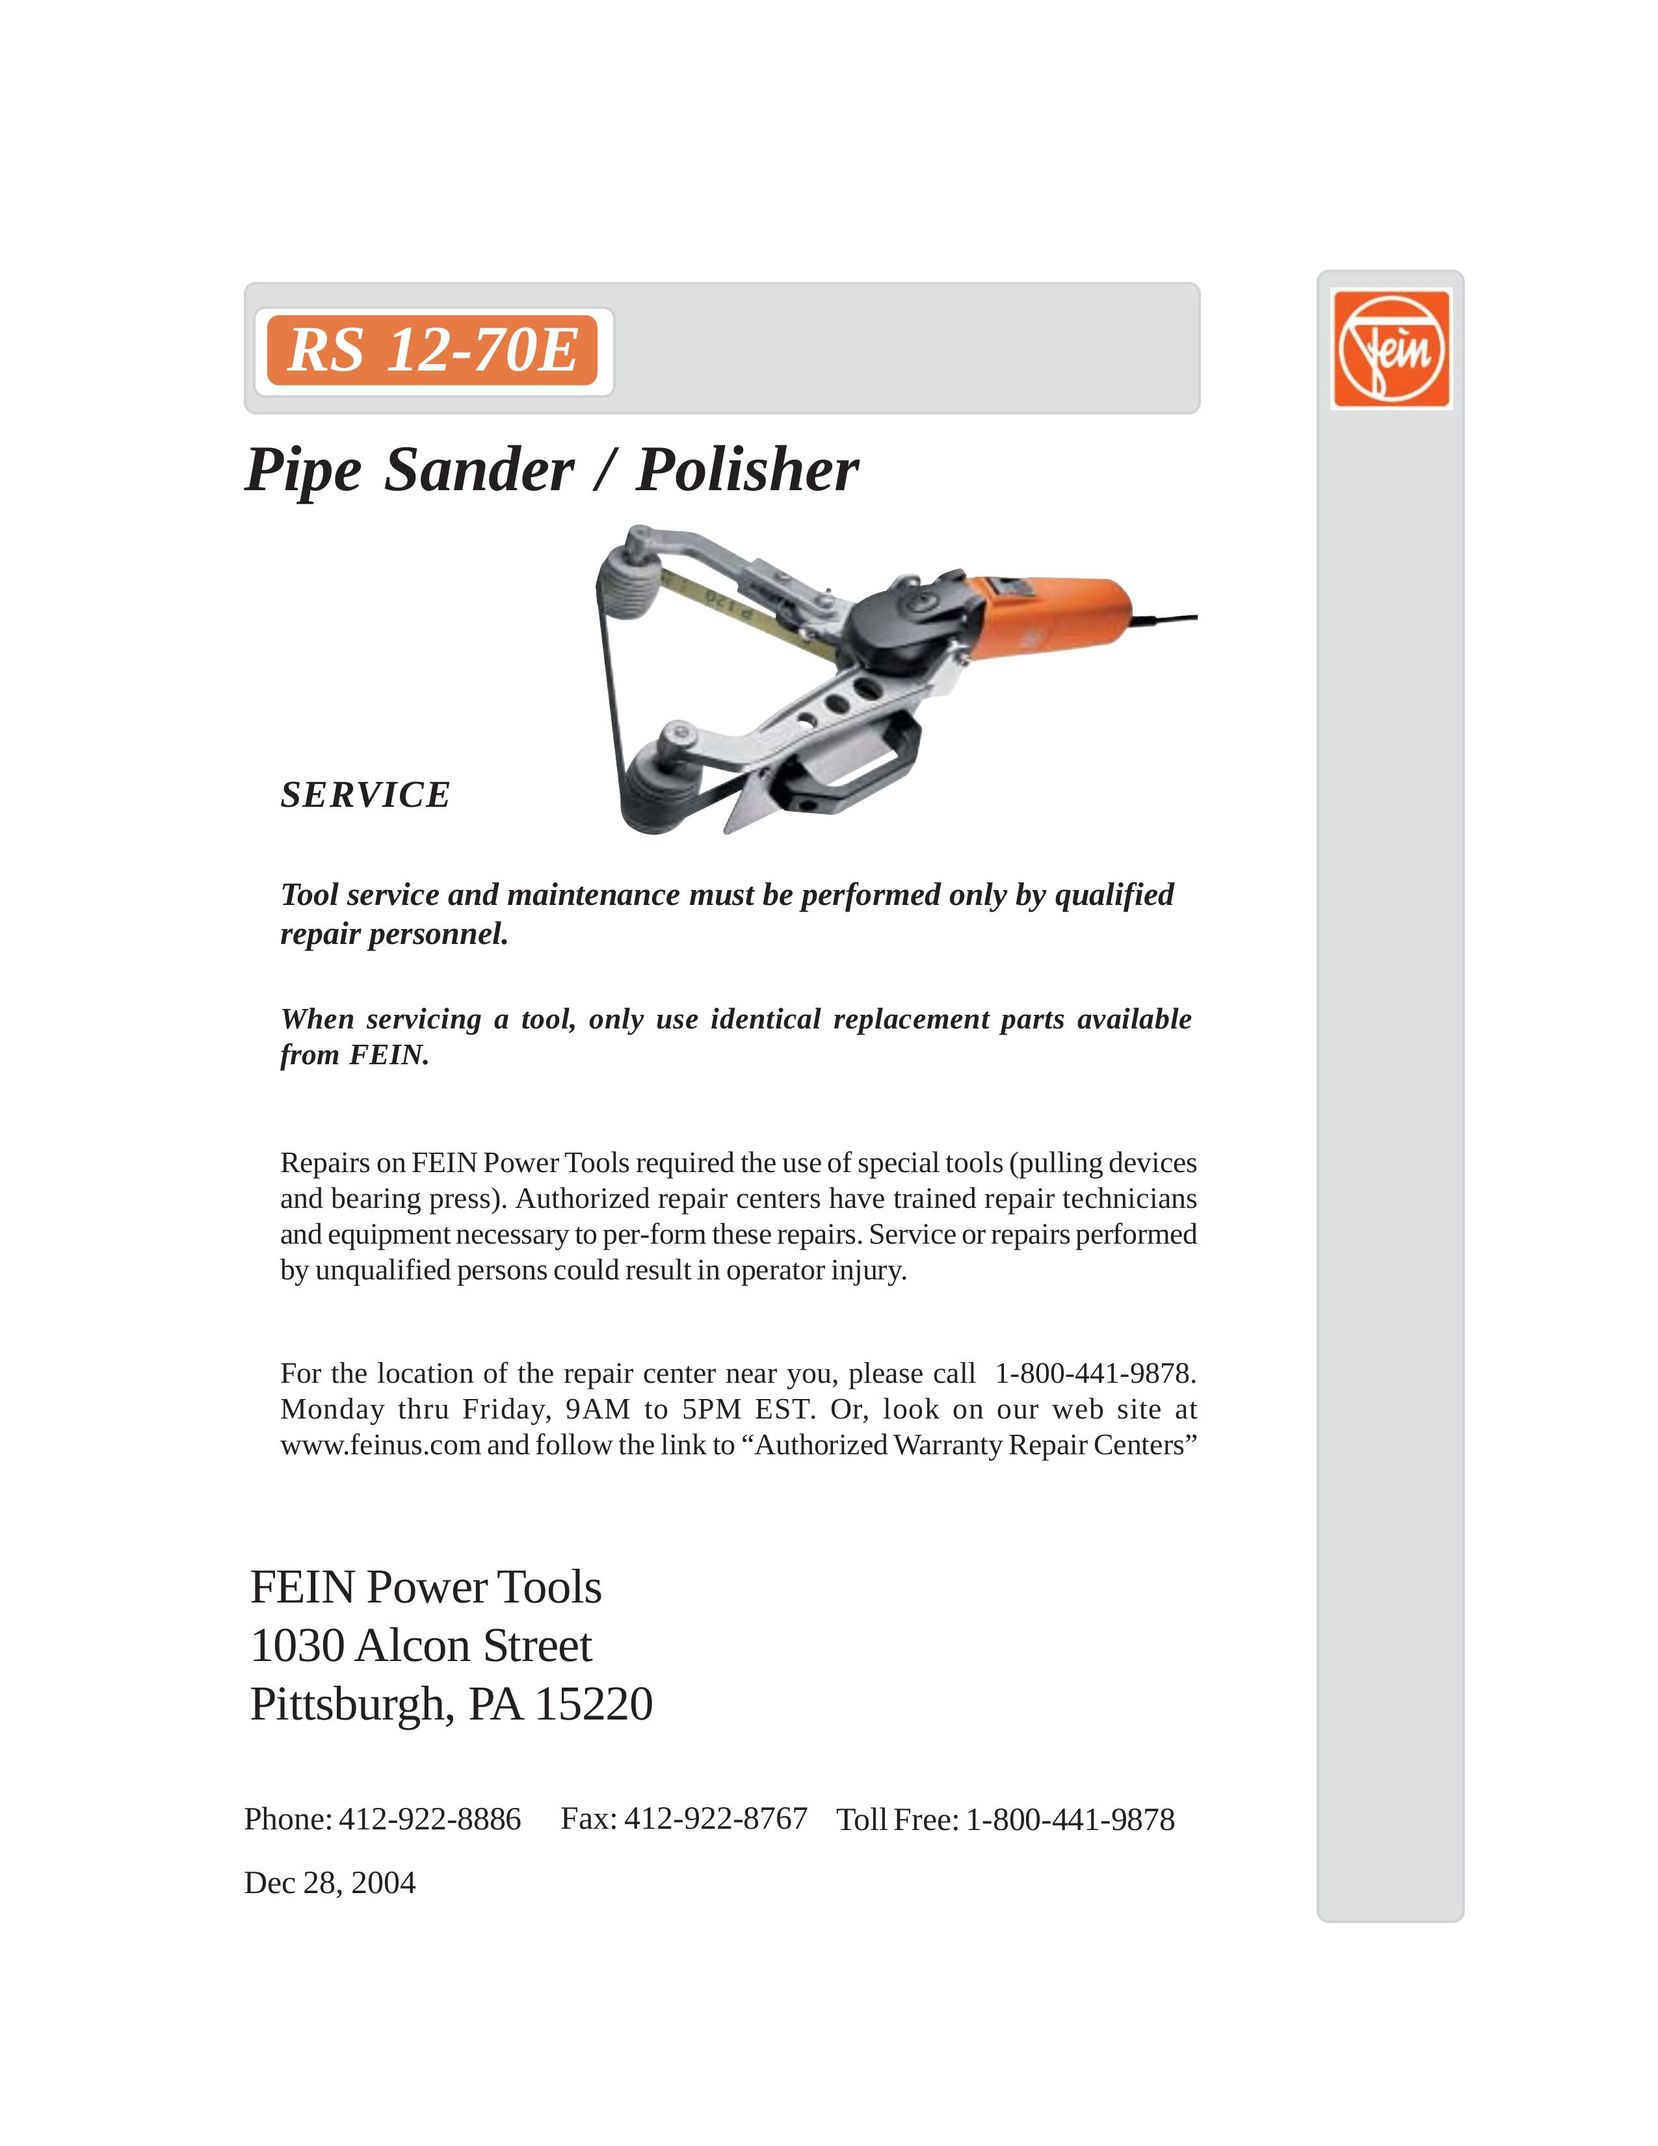 FEIN Power Tools RS 12-70E Sander User Manual